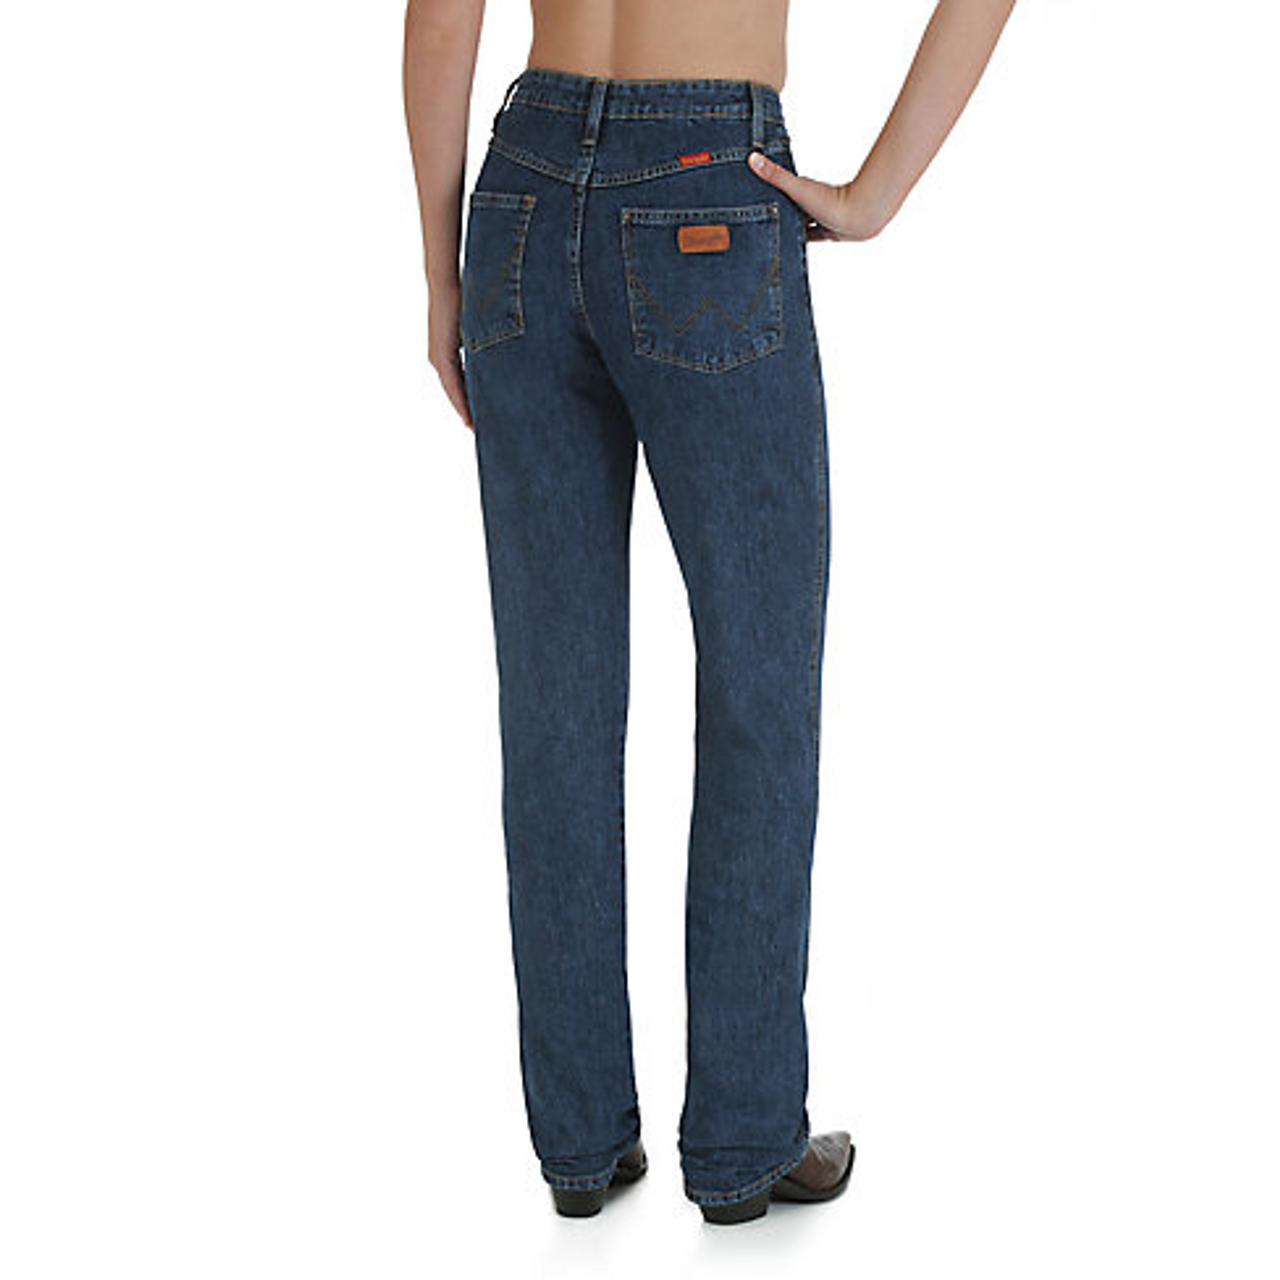 Wrangler Women's Jeans - Cowboy Cut - Stone Wash - Billy's Western Wear